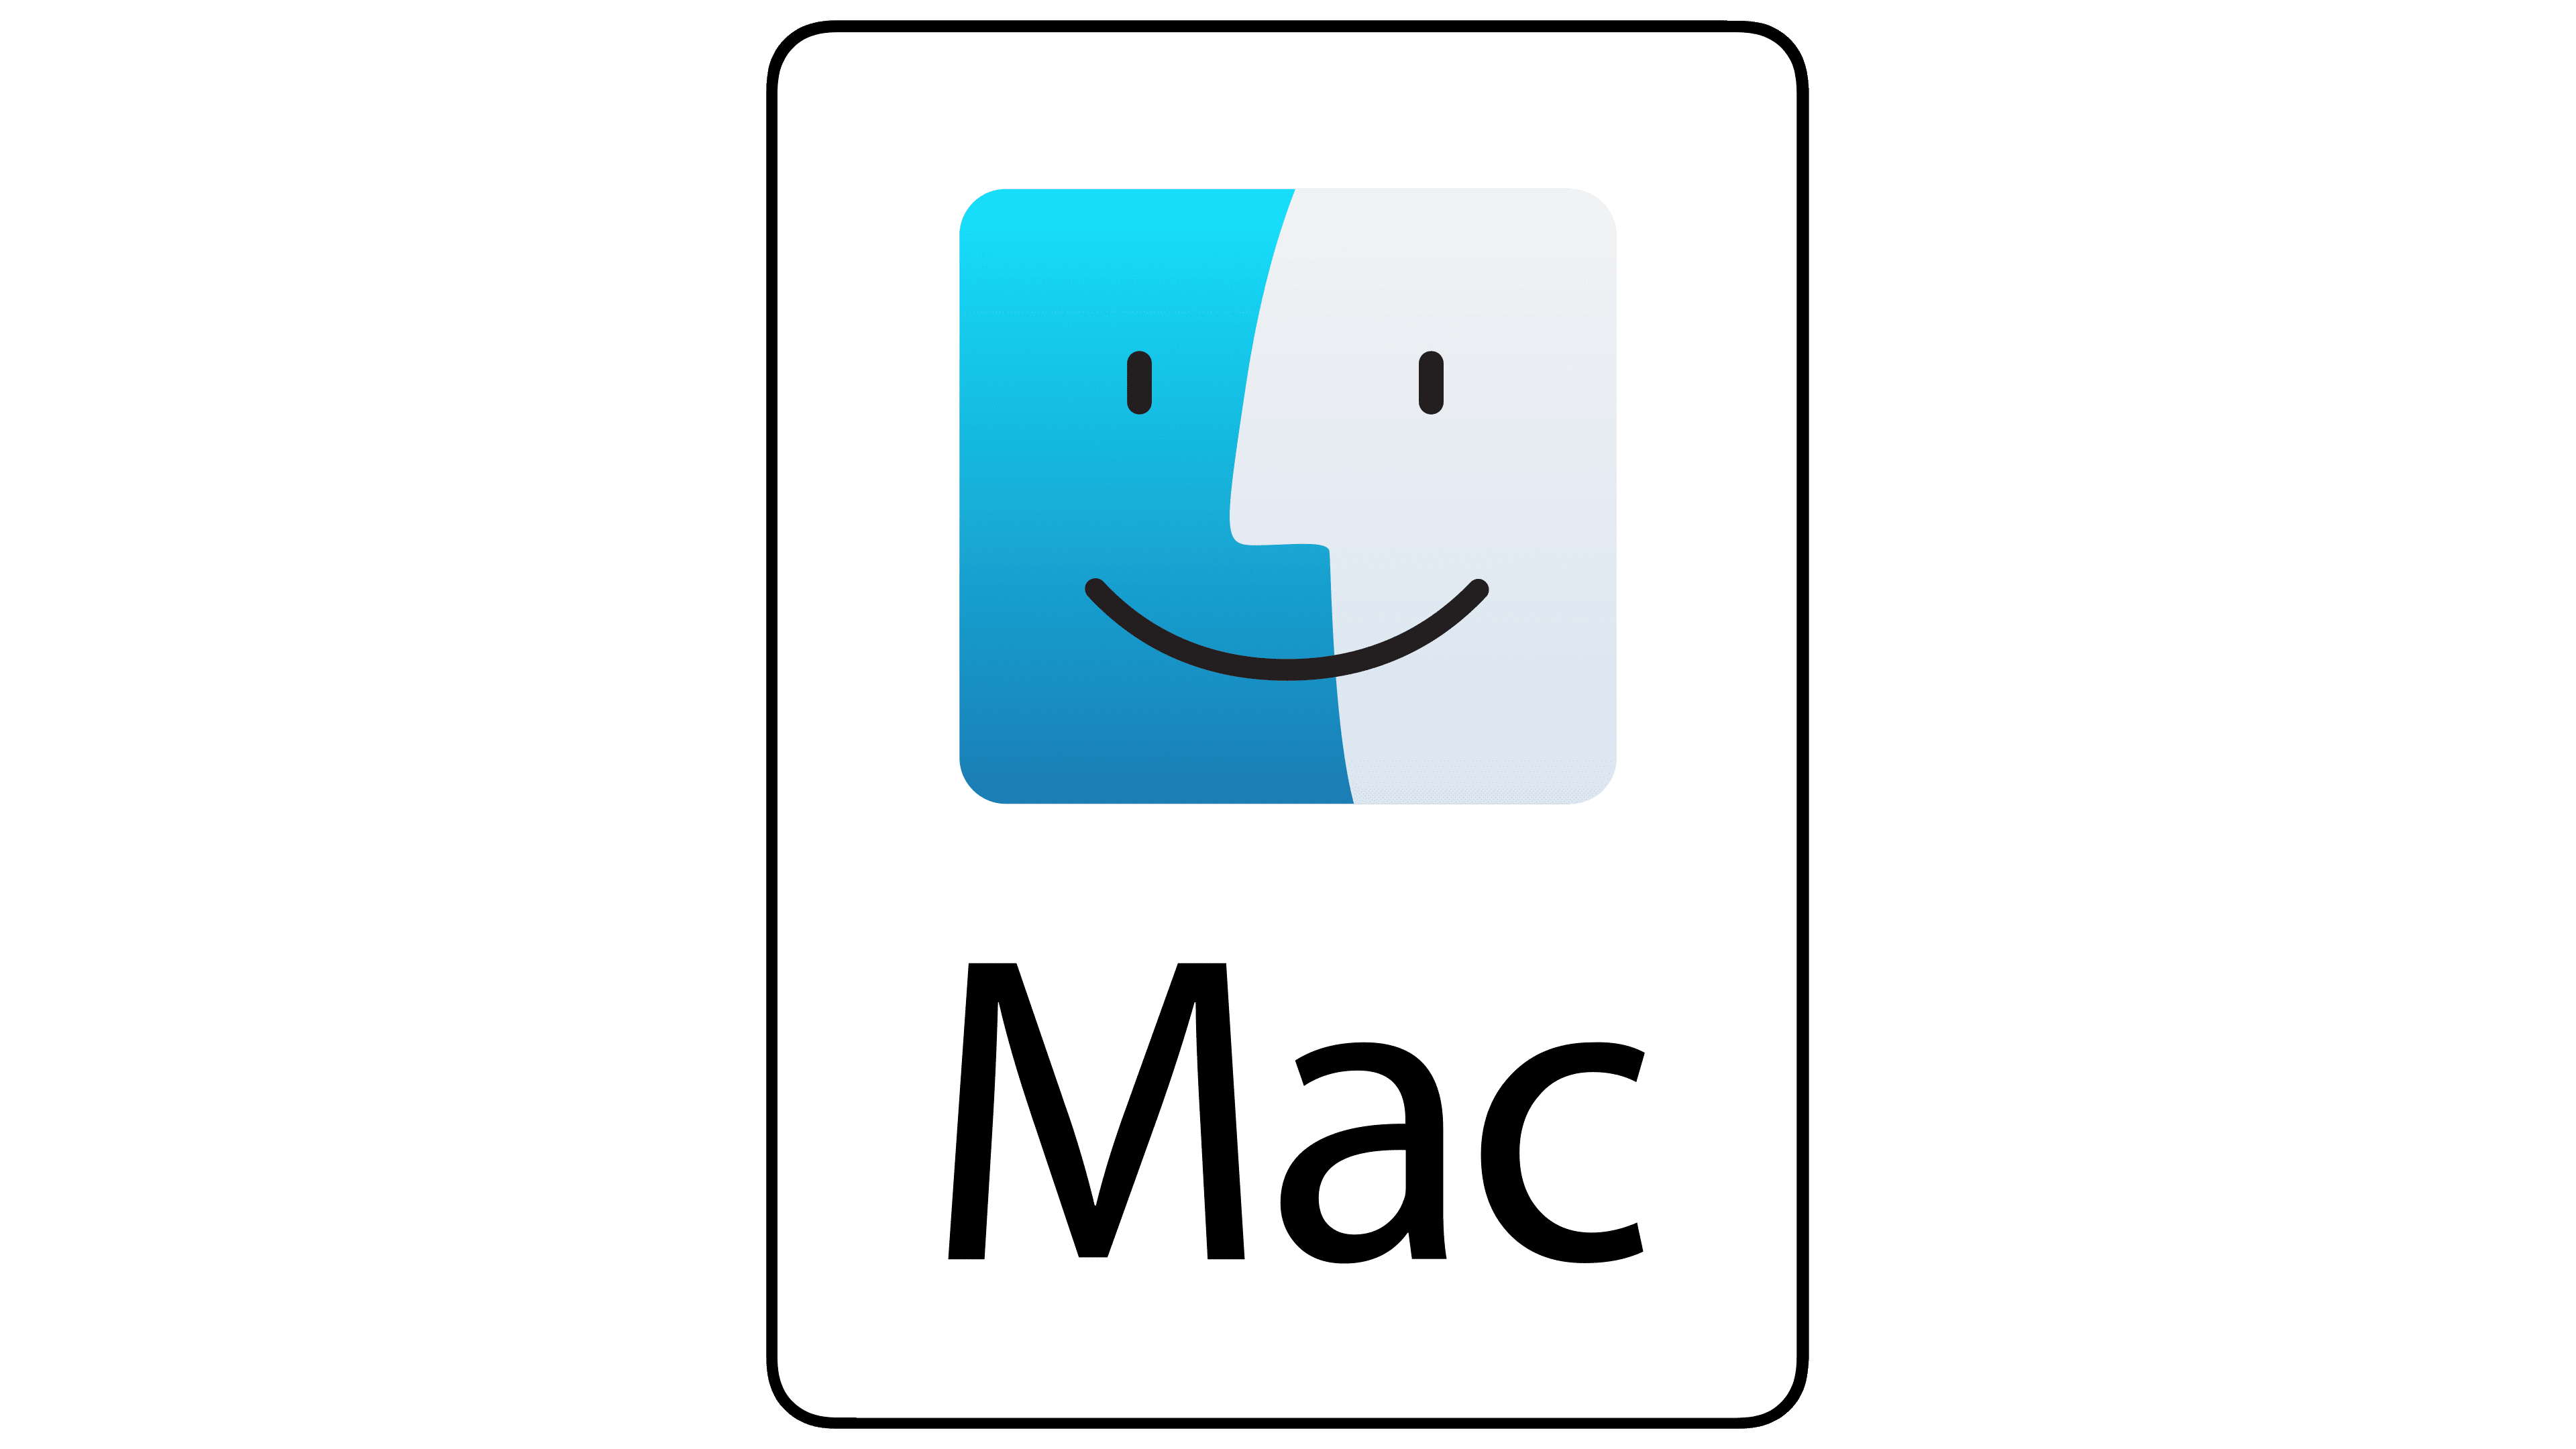 mac osx logo png